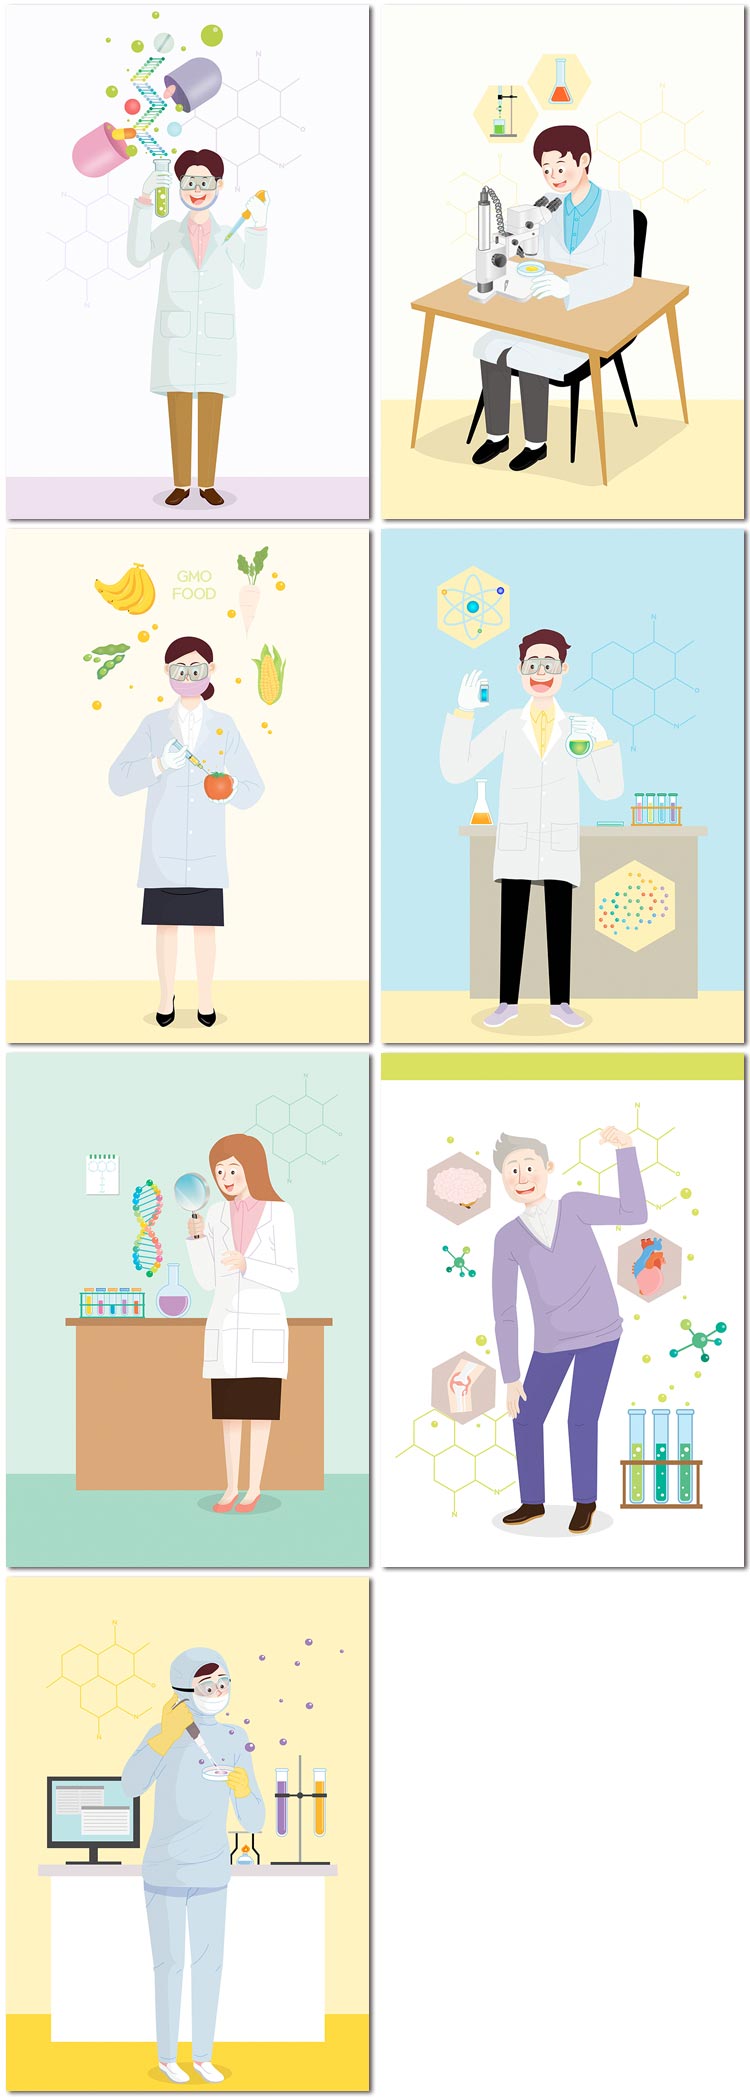 手绘健康科学生物化学科技实验研究医疗插图海报矢量设计素材模板